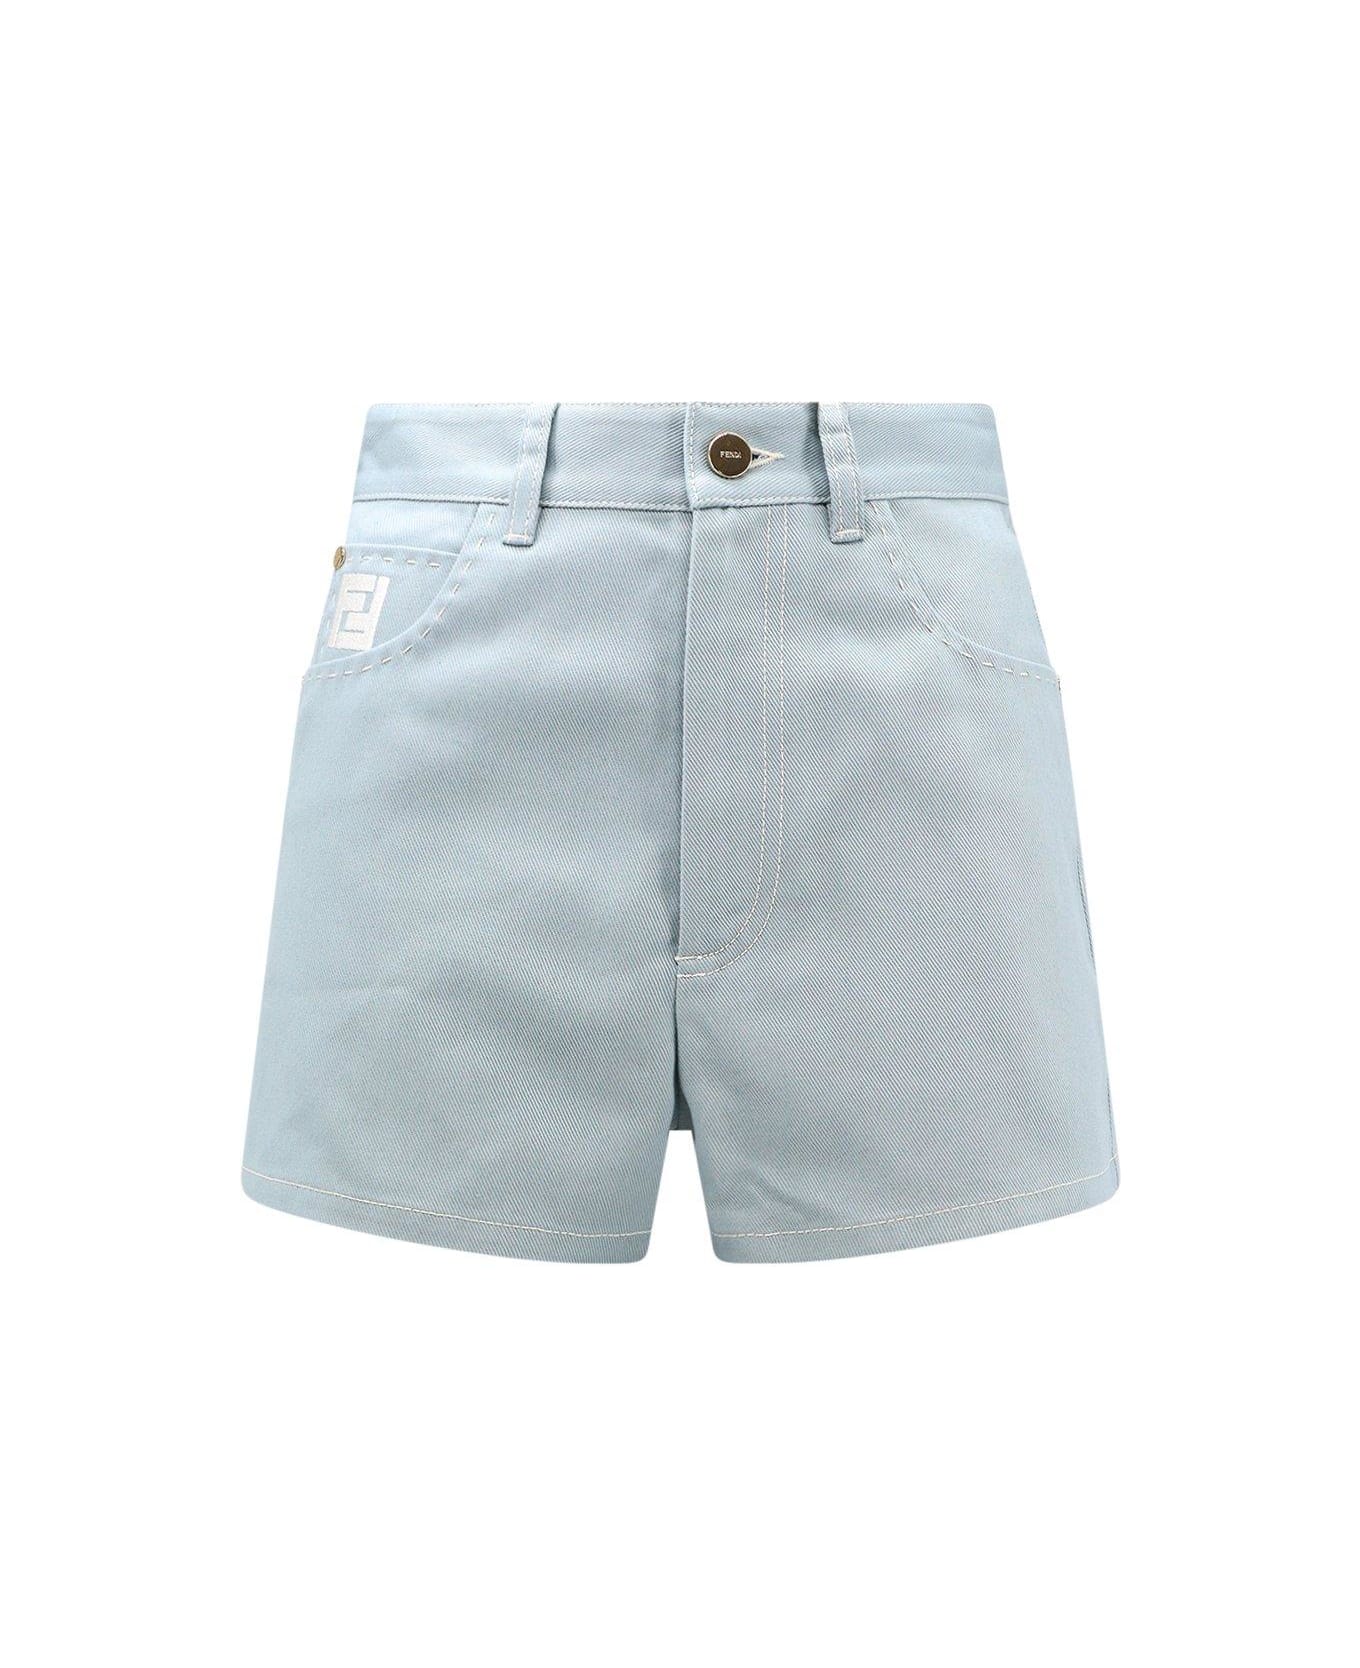 Fendi Ff Embroidered Denim Shorts - Blue ショートパンツ